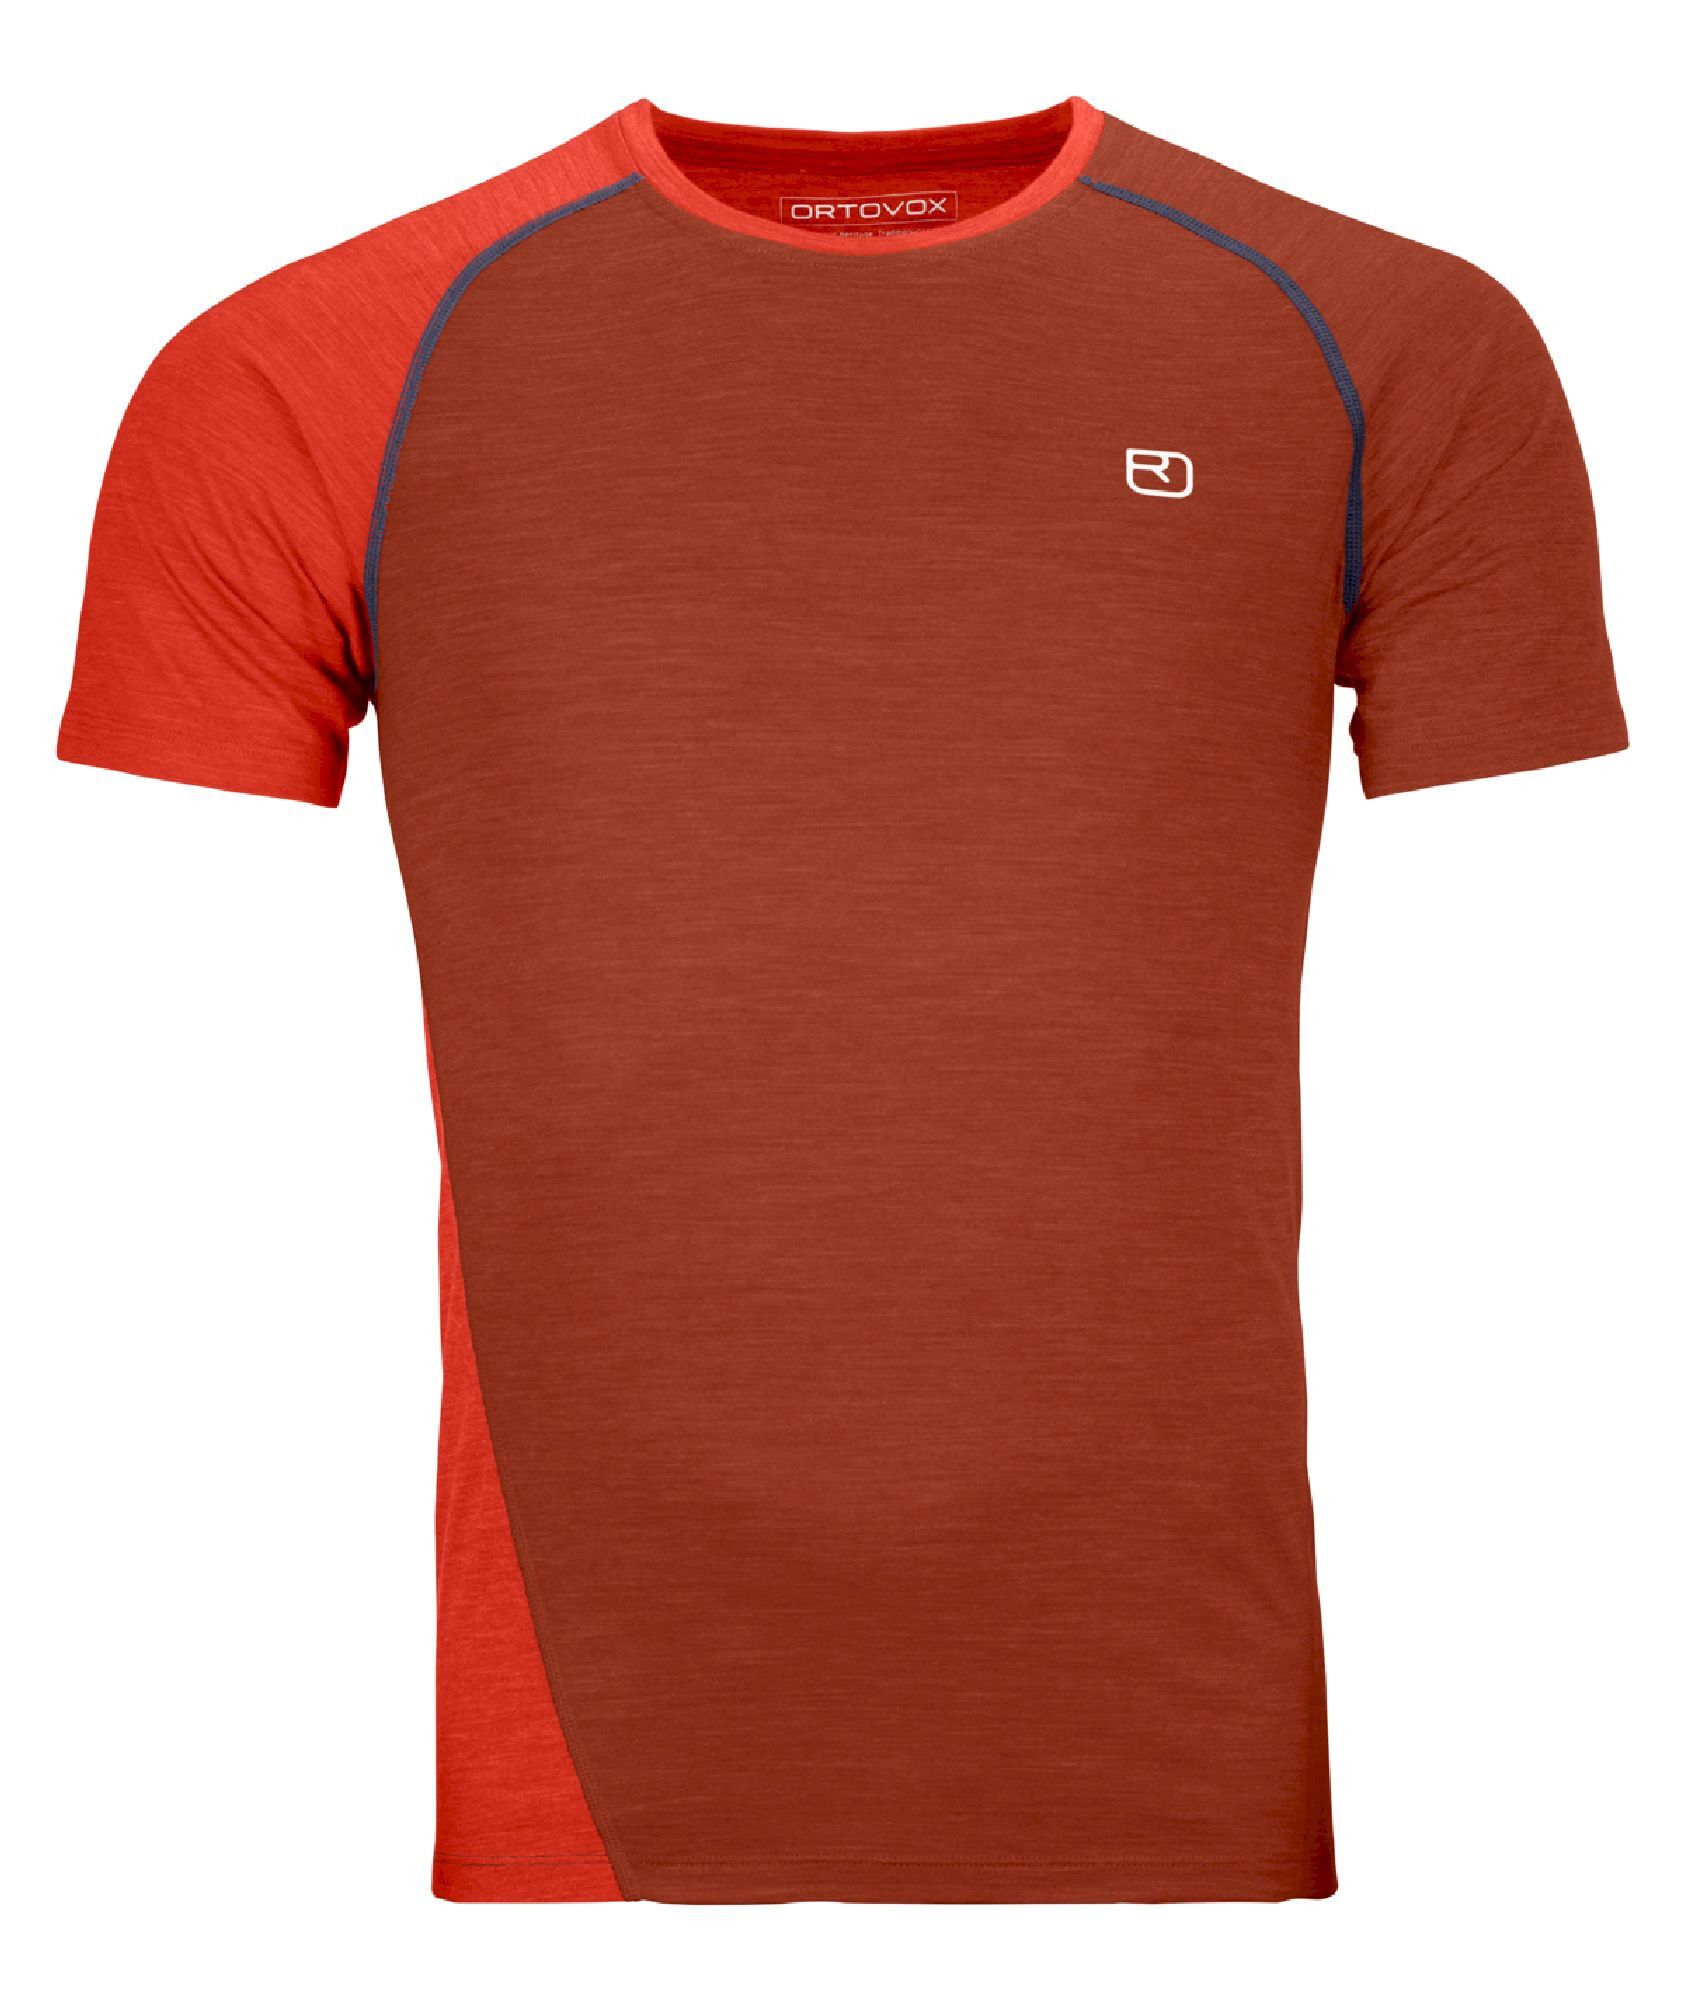 Ortovox 120 Cool Tec Fast Upward - T-shirt - Heren